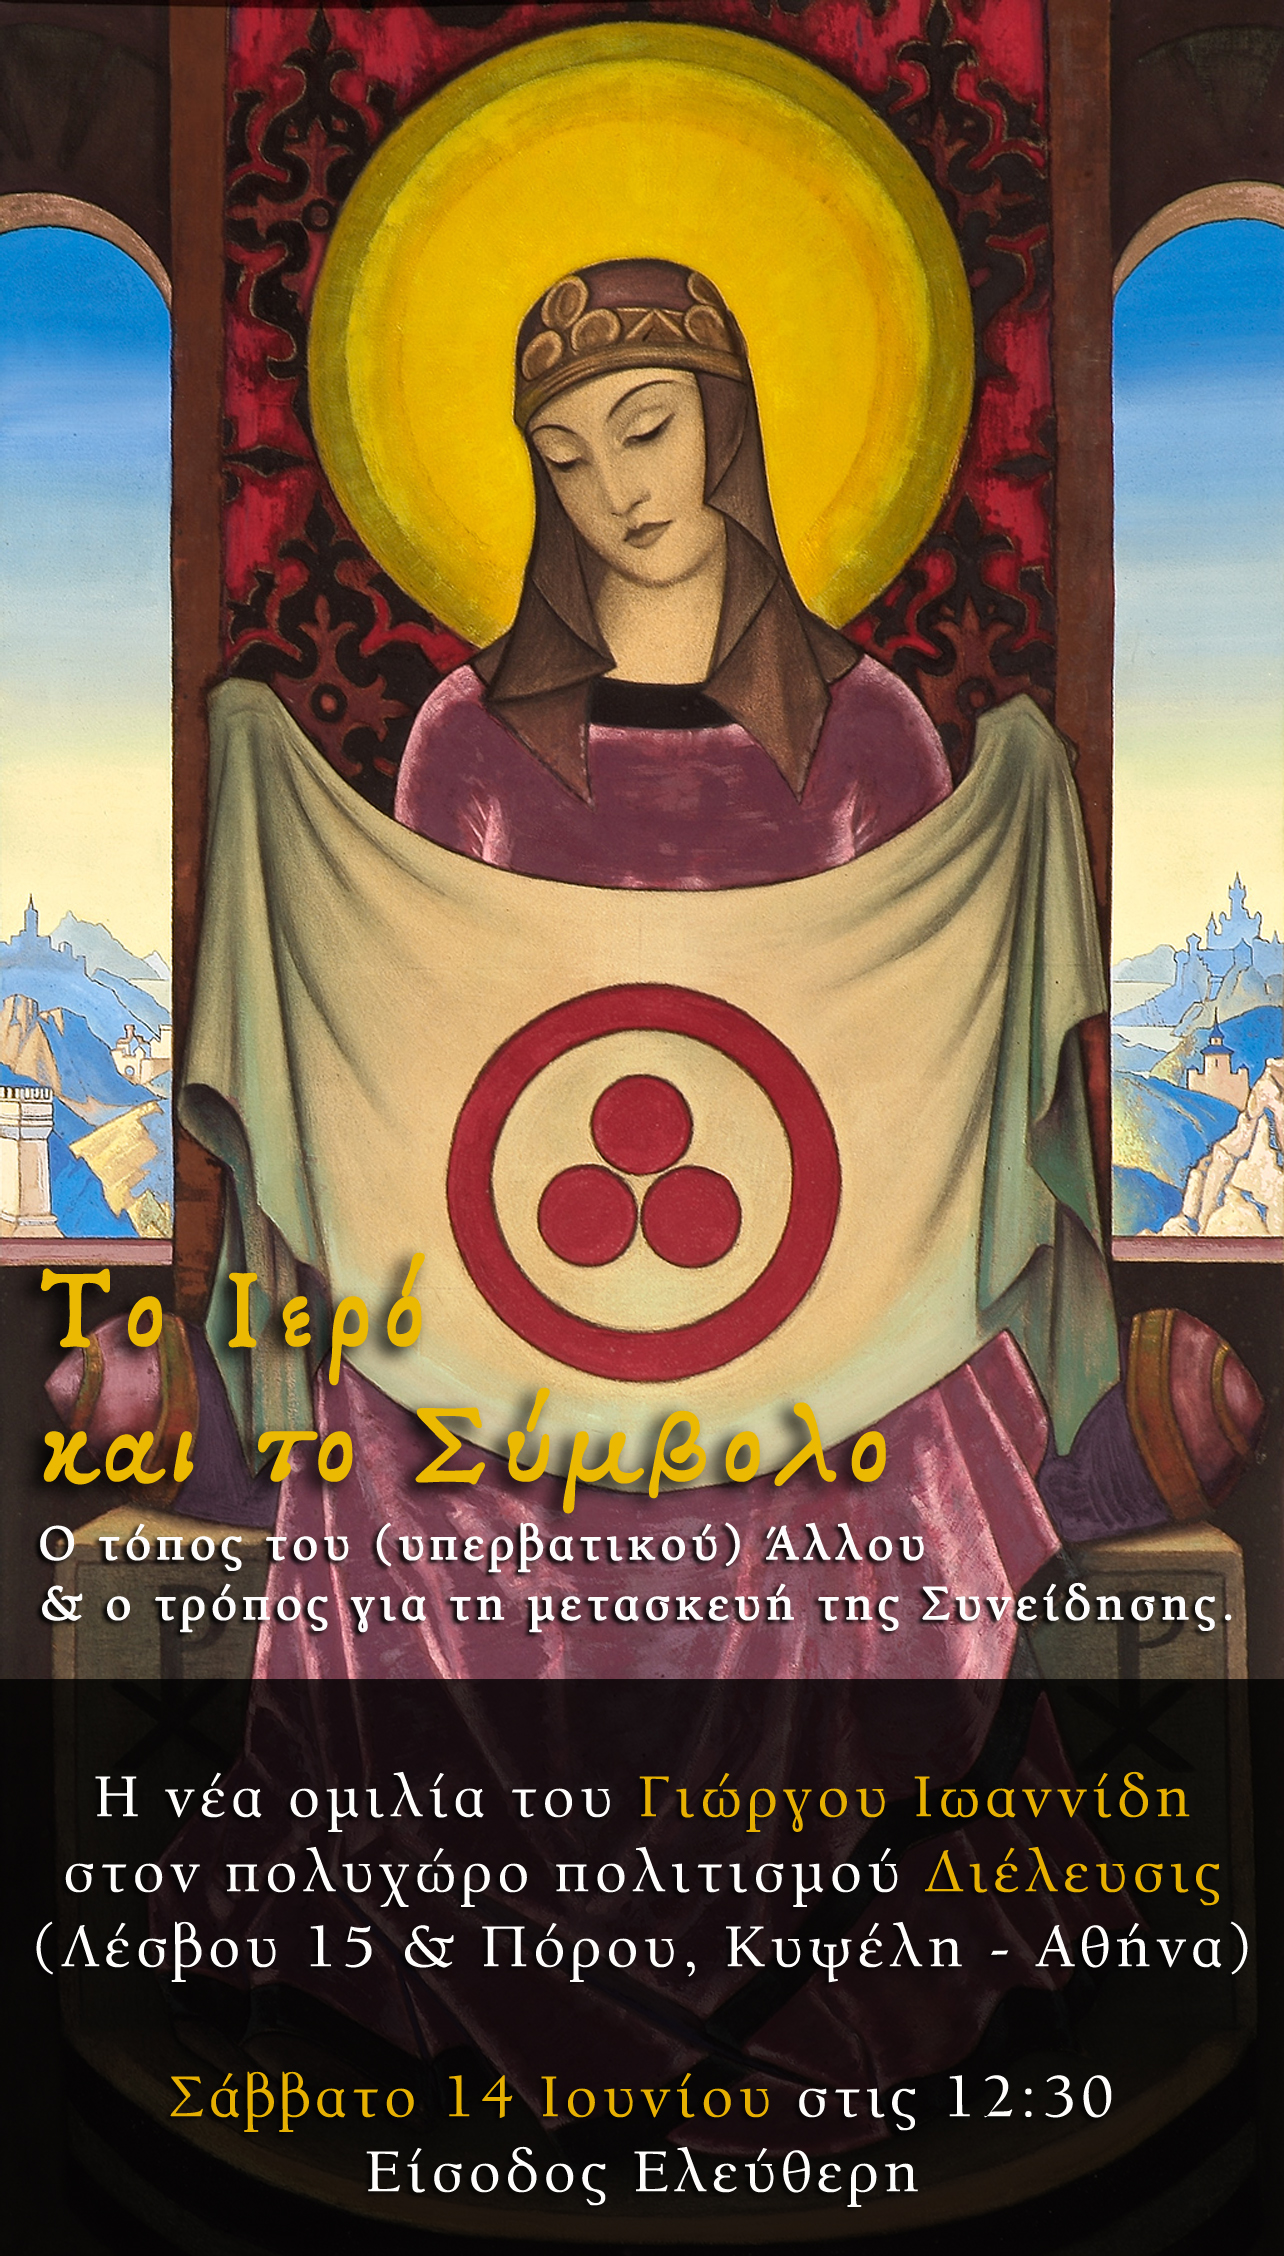 Το Ιερό και το Σύμβολο – Η Νέα Ομιλία του Γιώργου Ιωαννίδη στην Αθήνα